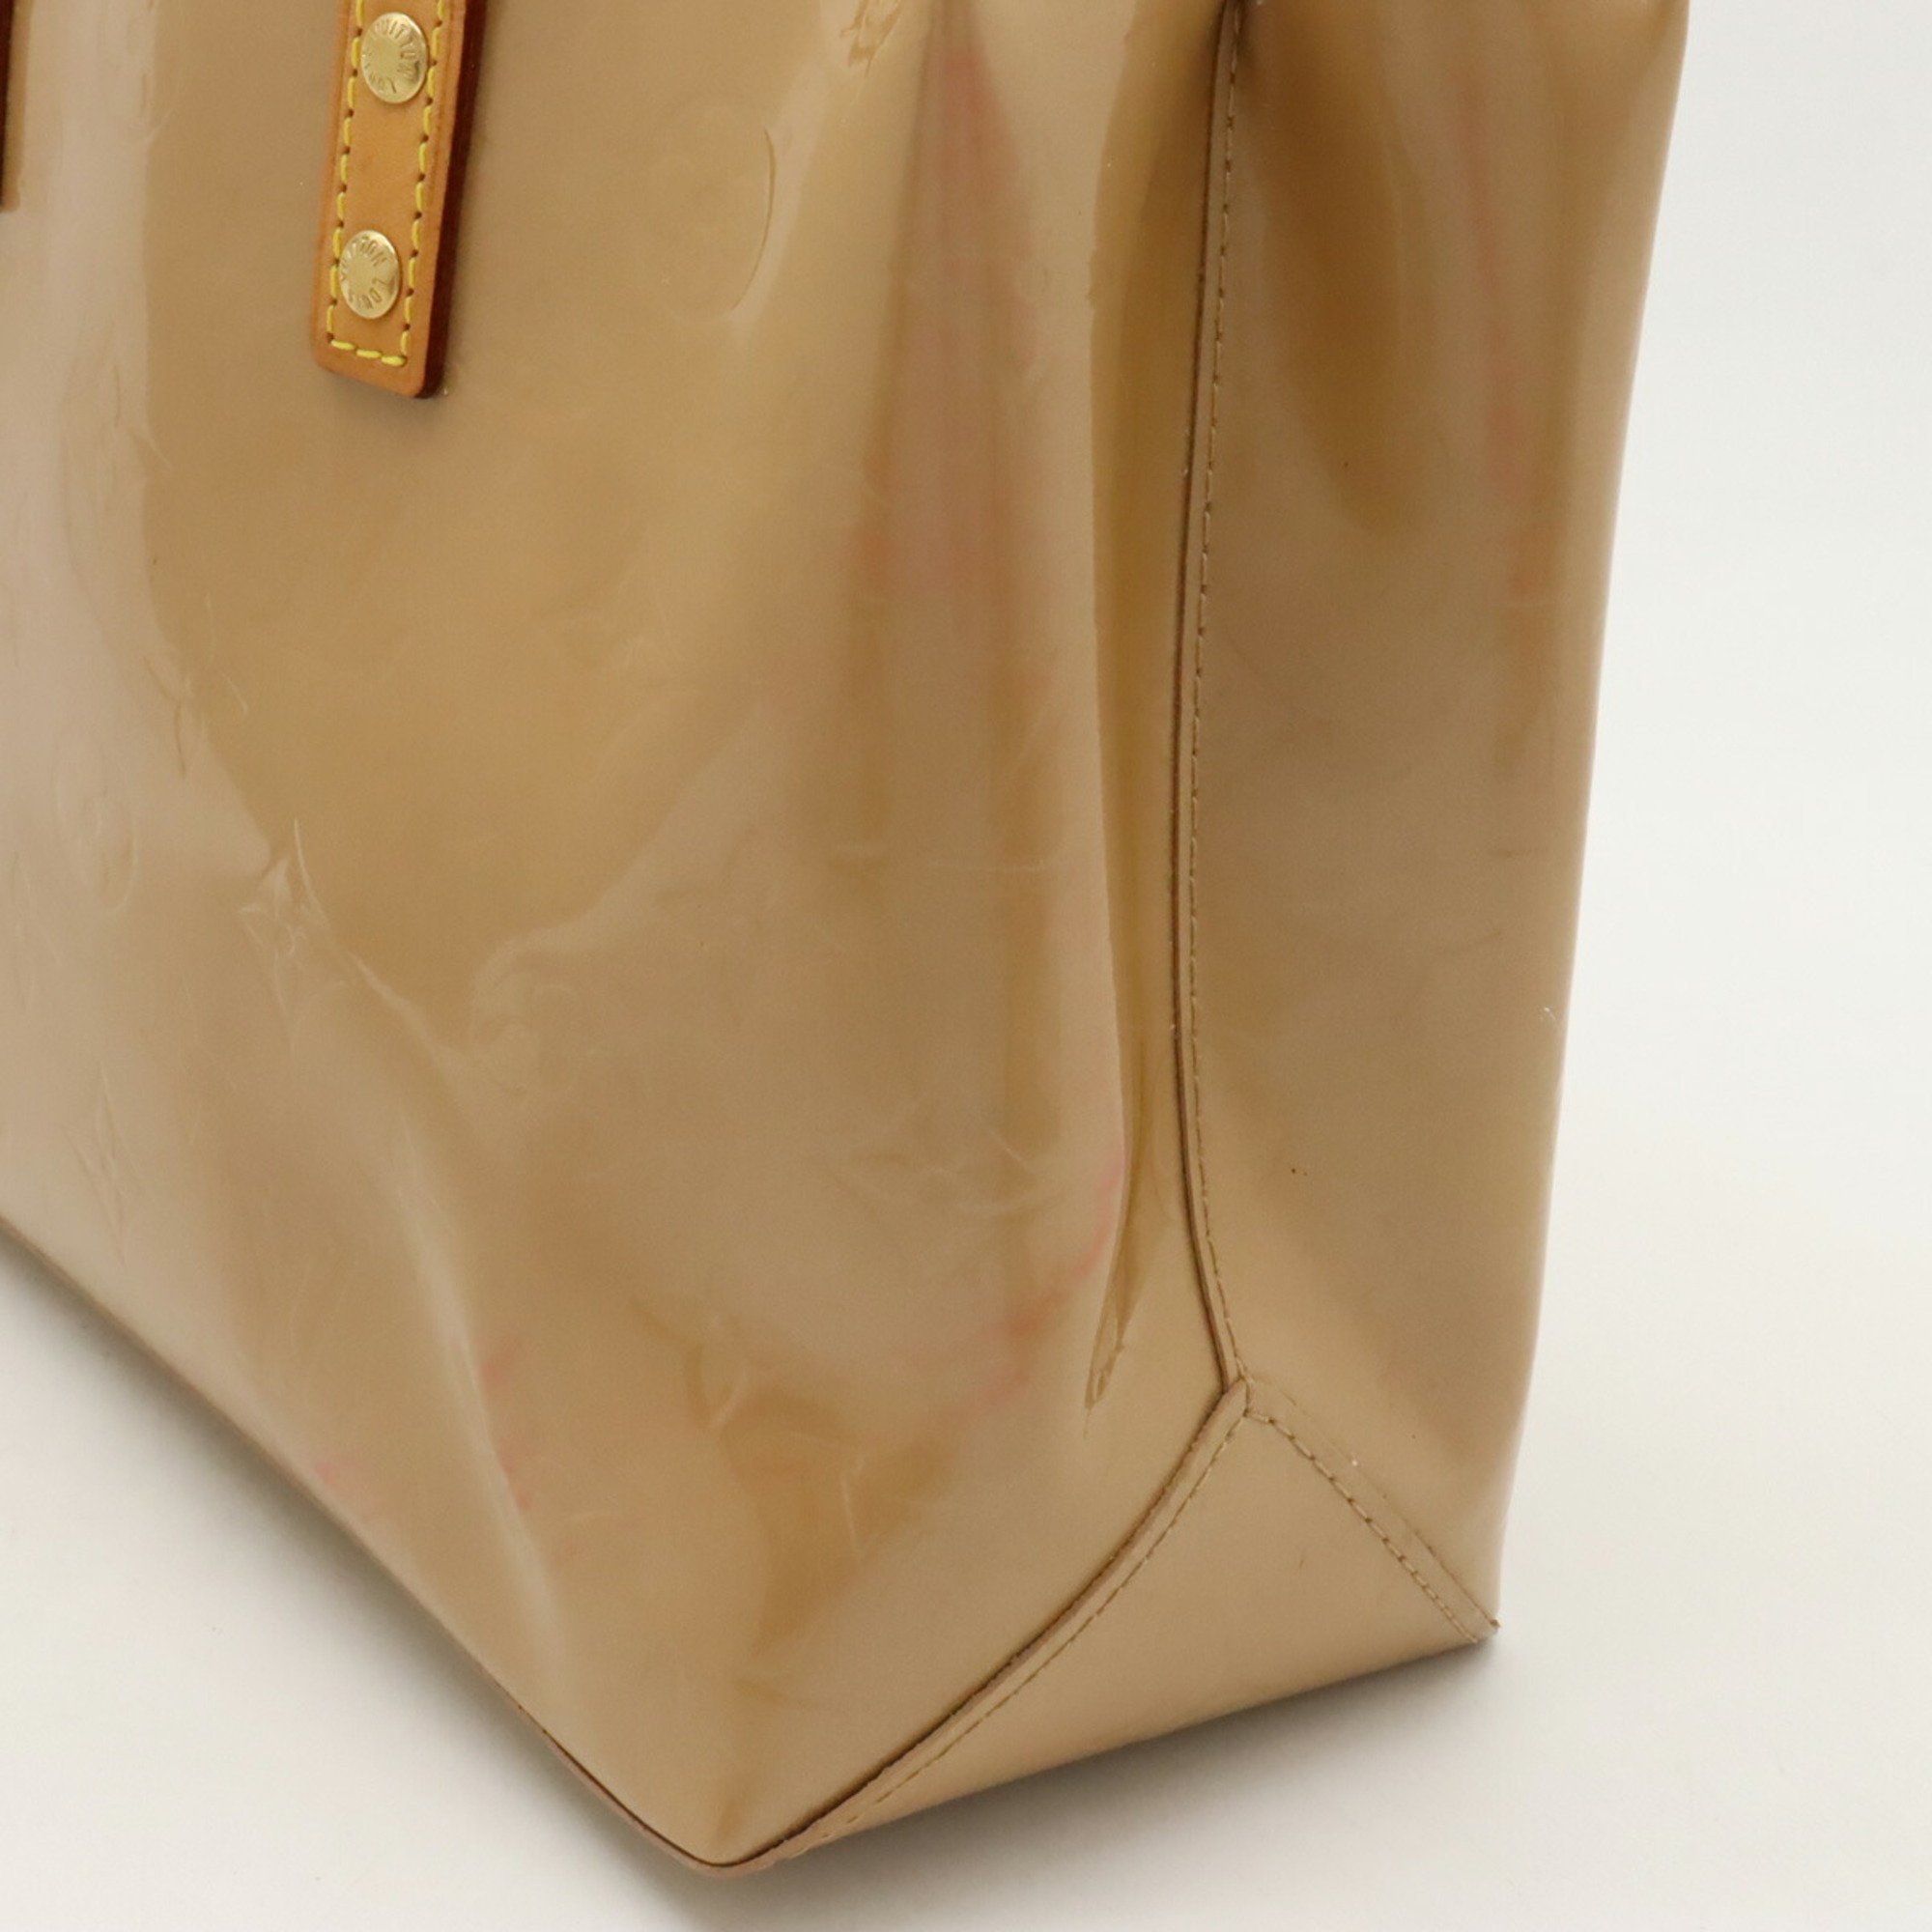 LOUIS VUITTON Louis Vuitton Monogram Vernis Reed PM Handbag Tote Bag Enamel Noisette Beige M91334